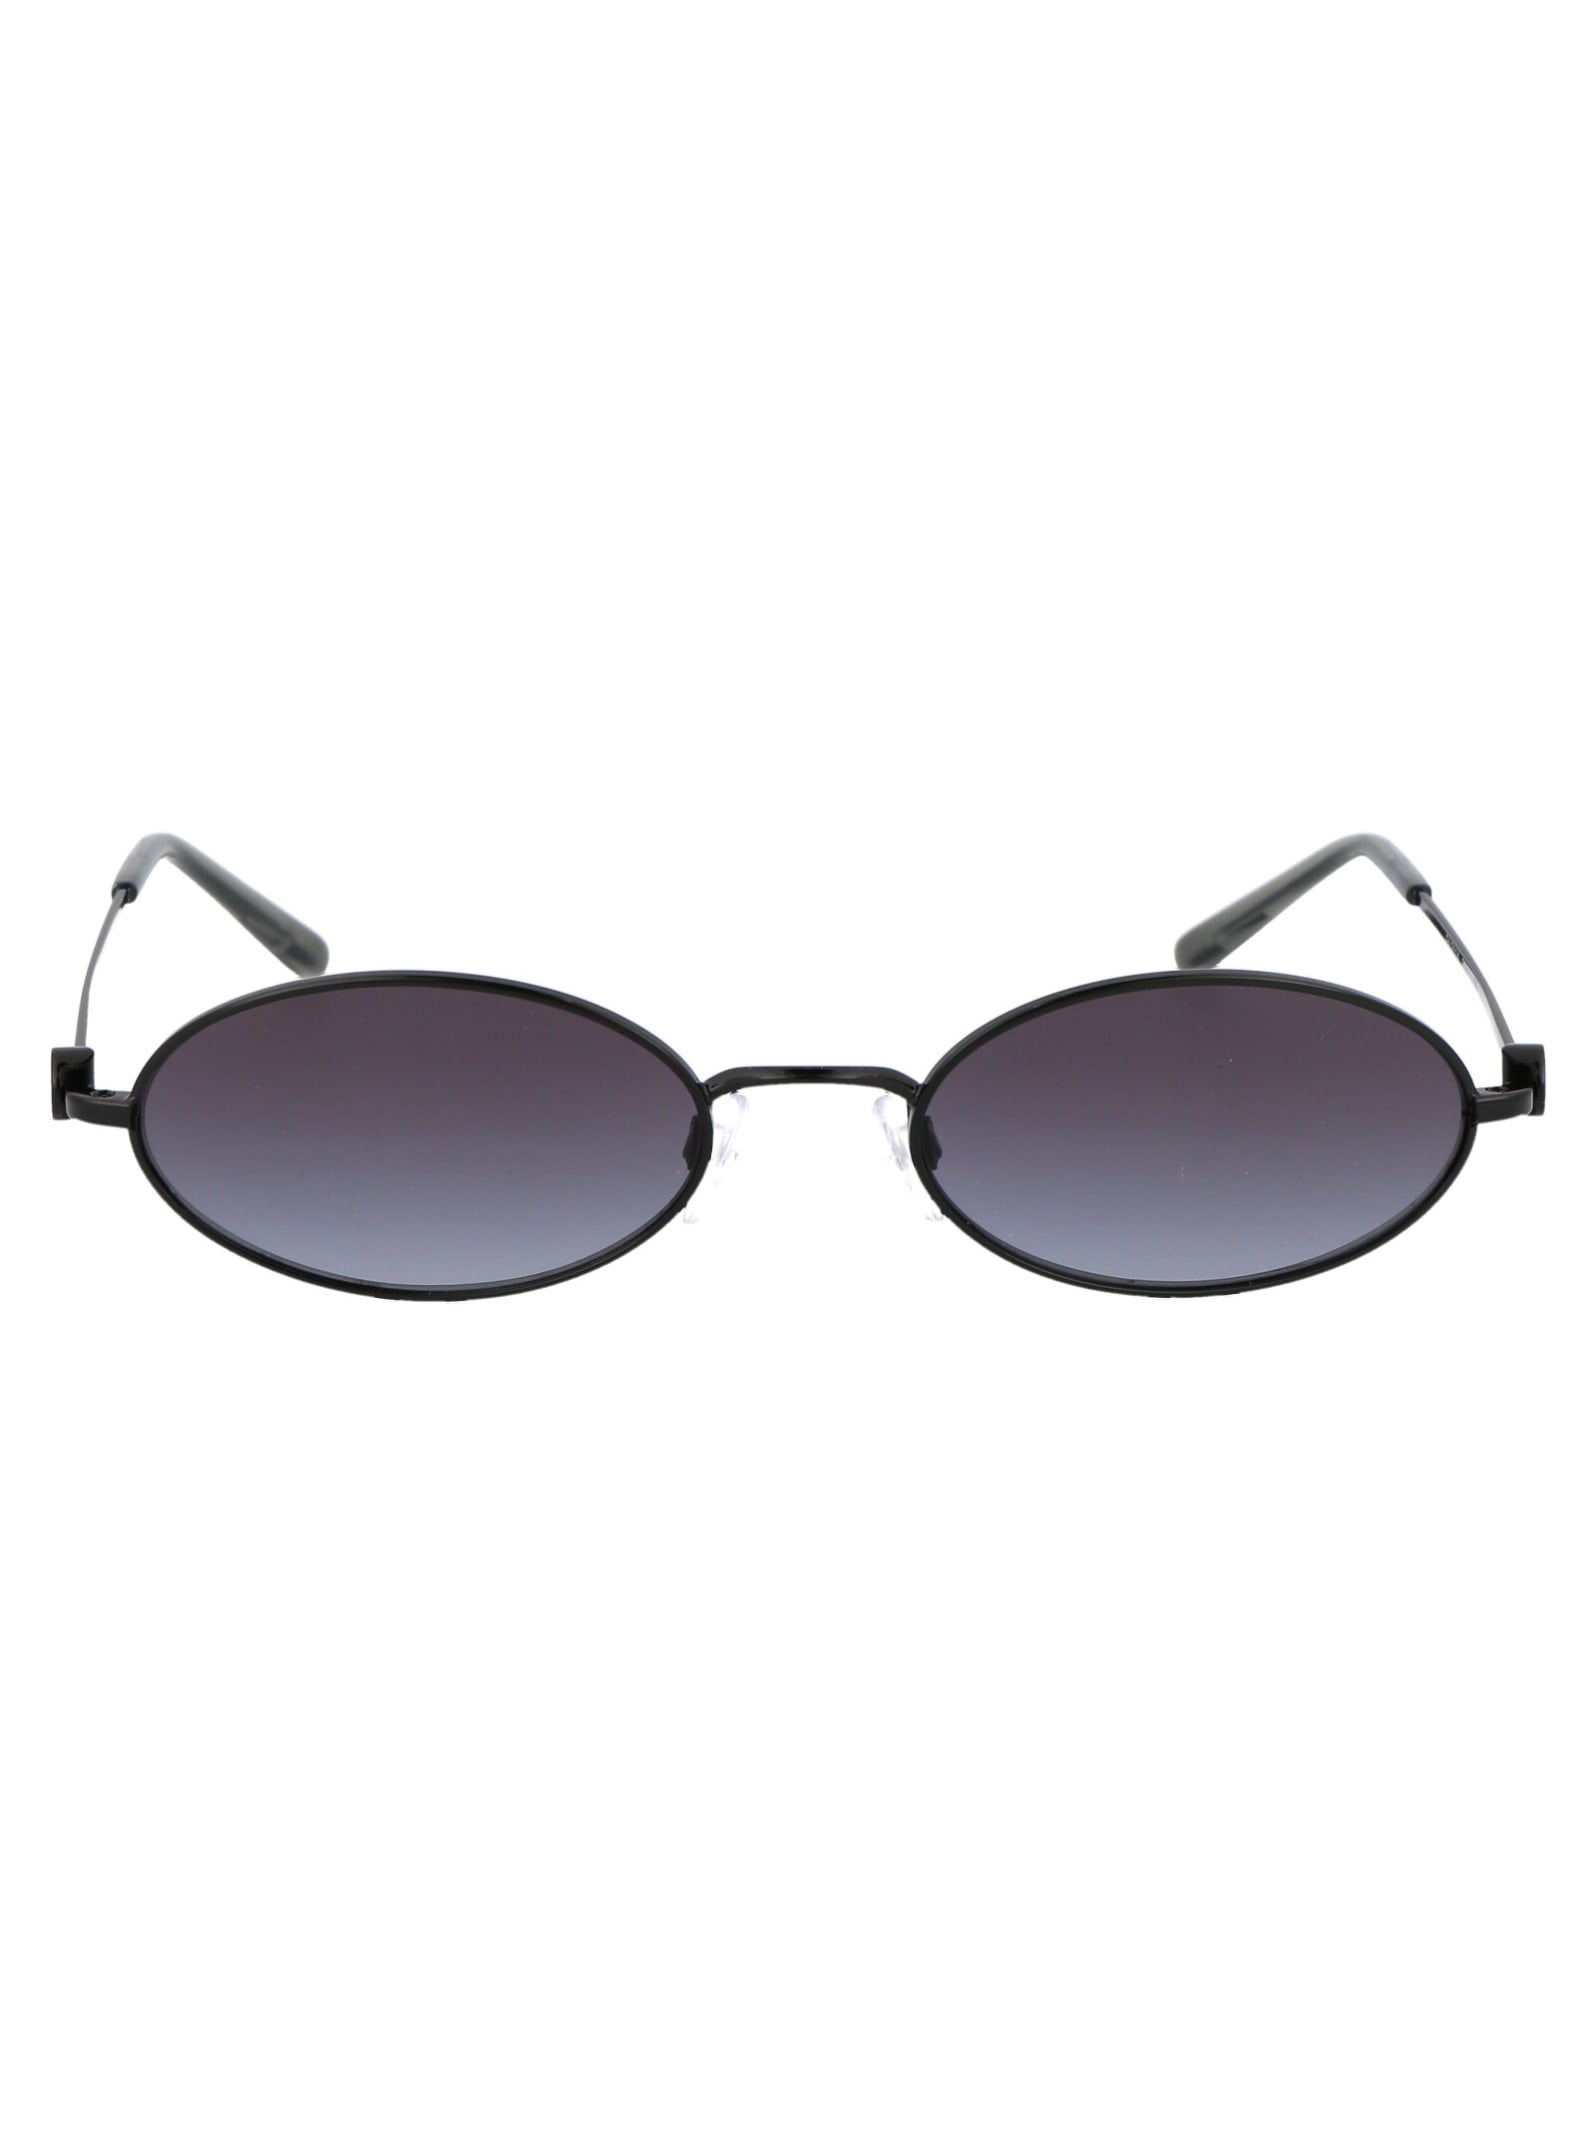 Emporio Armani 0ea2114 Sunglasses